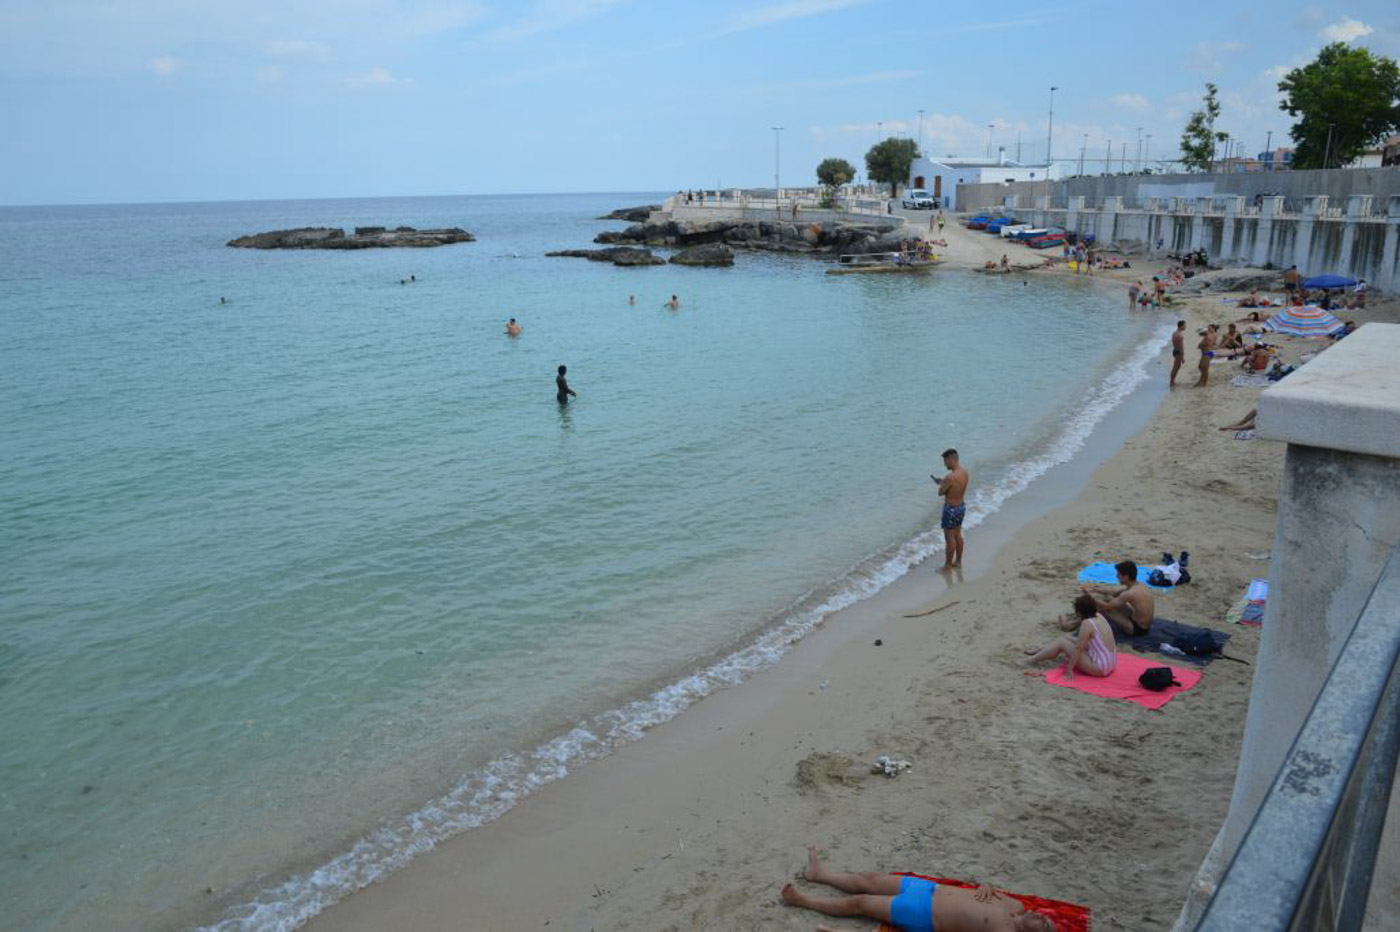 The beach in Monopoli, Puglia